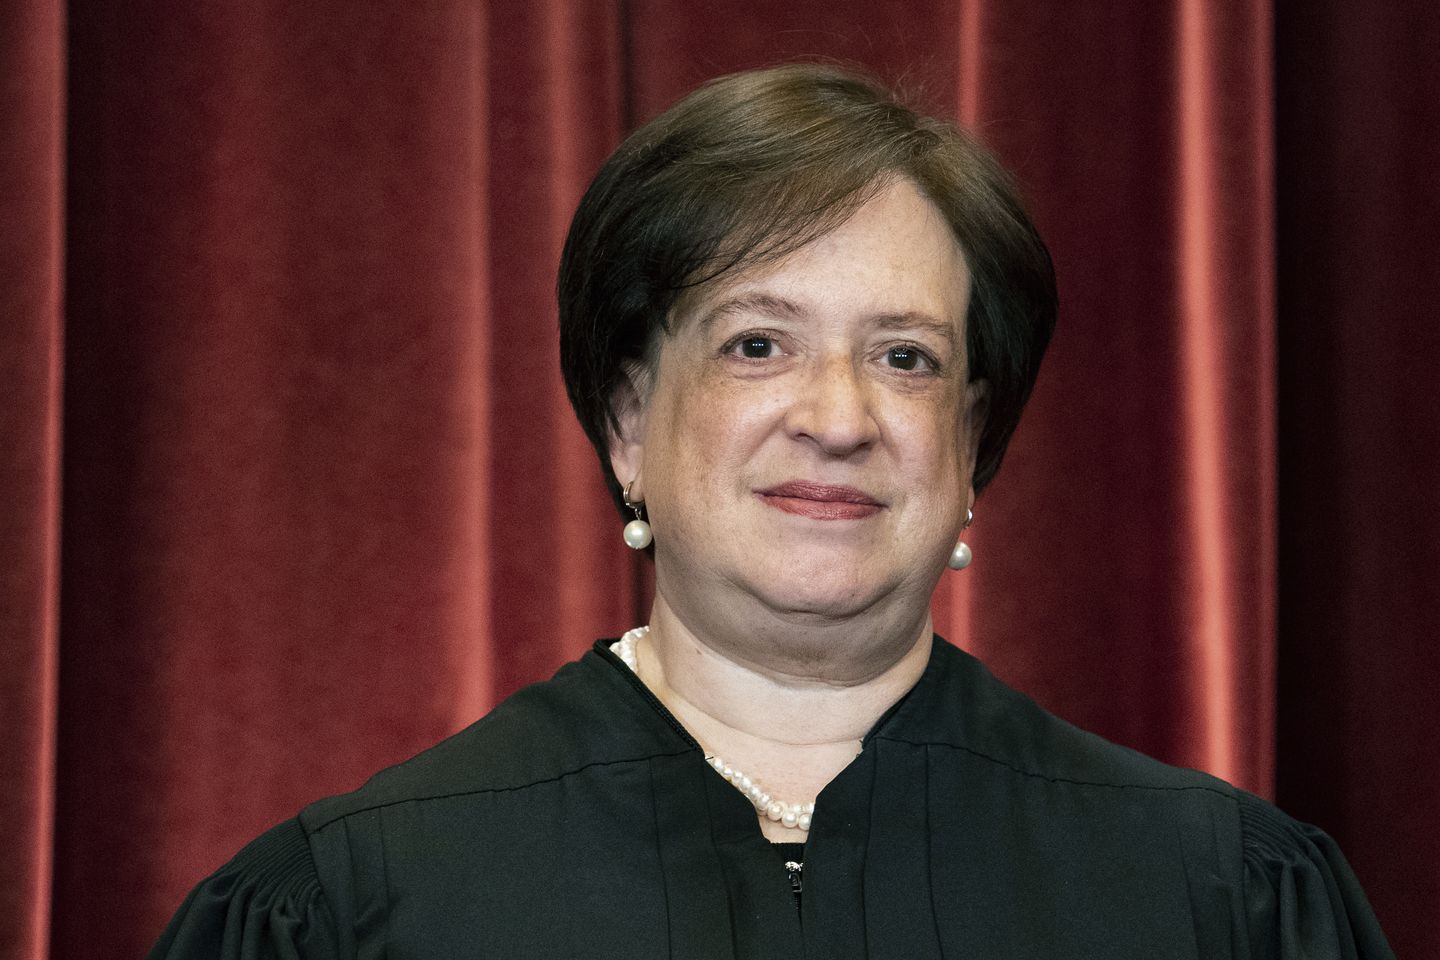 El juez Kagan sugiere que la actualización de la filtración de la Corte Suprema llegará a finales de mes